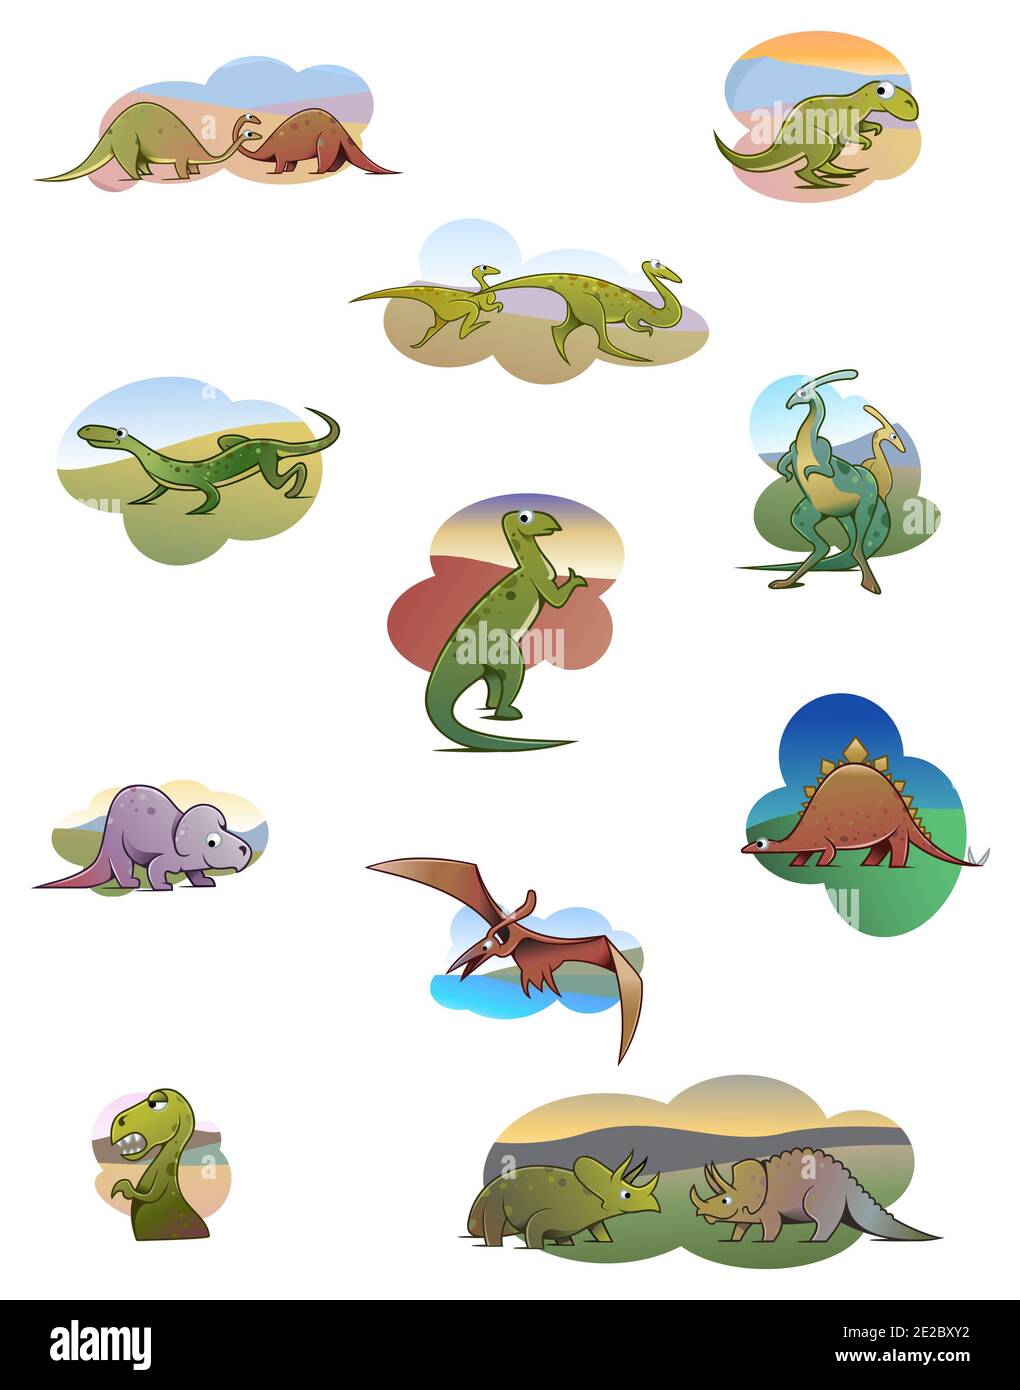 Illustrazione in stile cartoon - Collezione di simpatici dinosauri Foto Stock